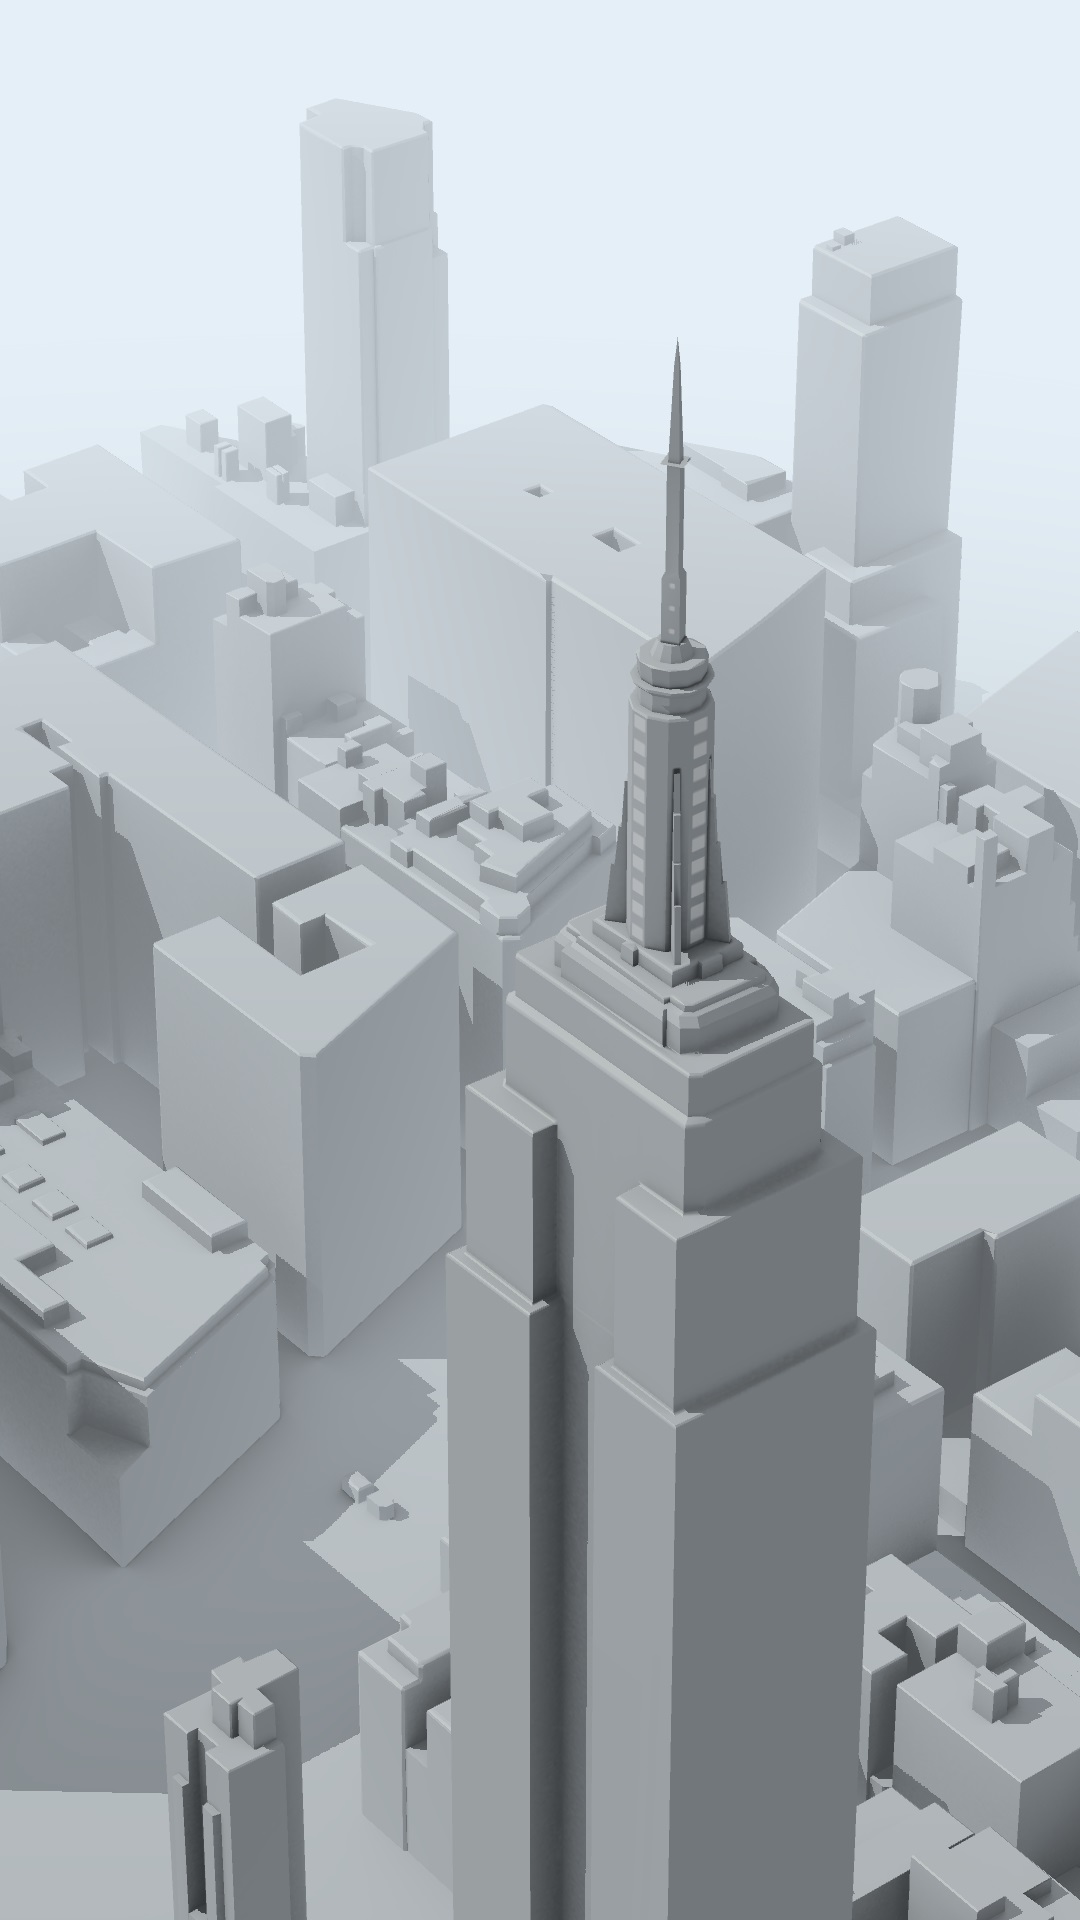 fond d'écran par défaut google pixel,gratte ciel,ville,architecture,zone urbaine,la tour